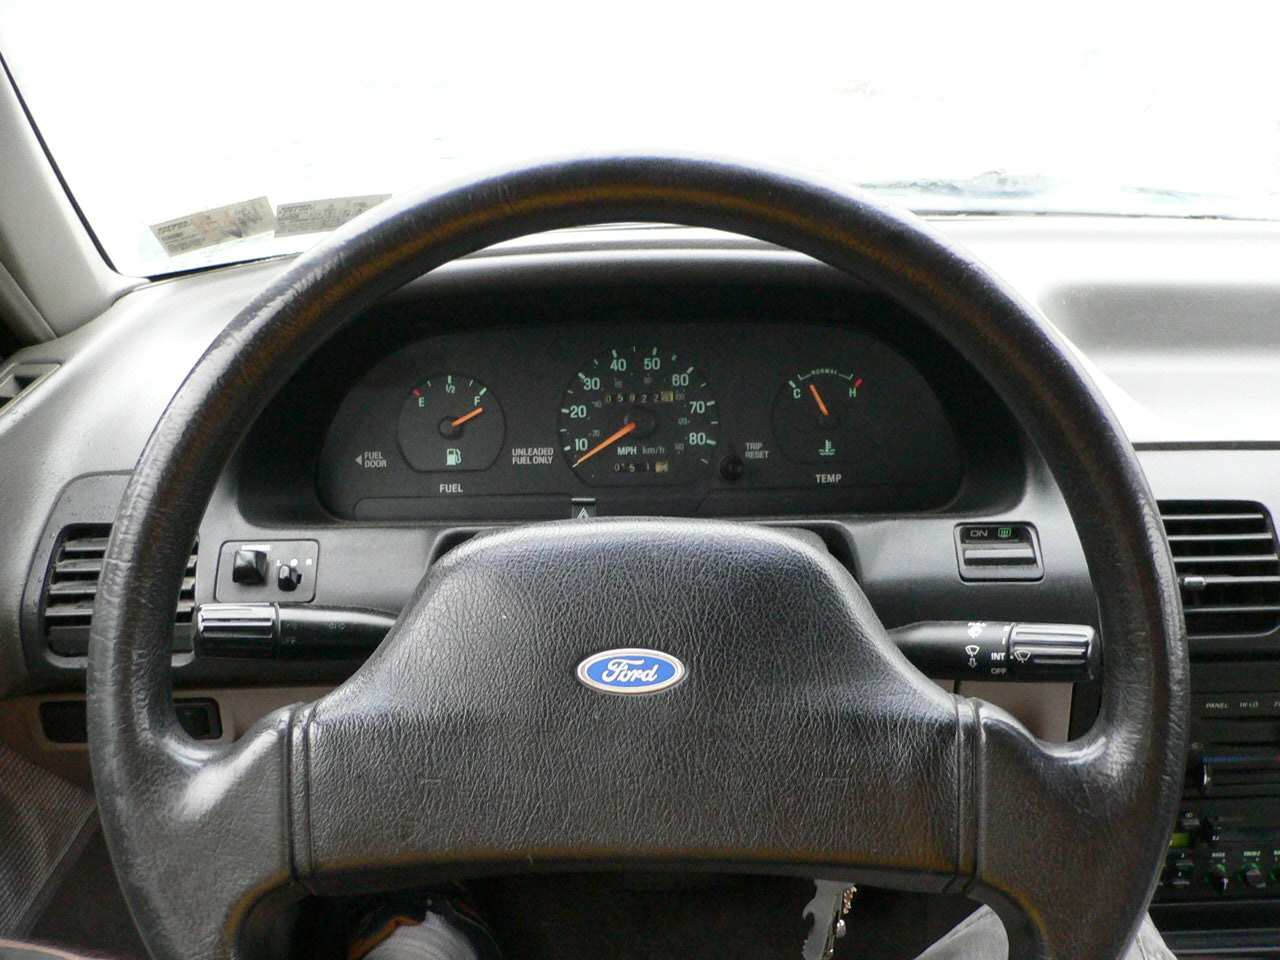 1991 Ford escort lx wagon mpg #2